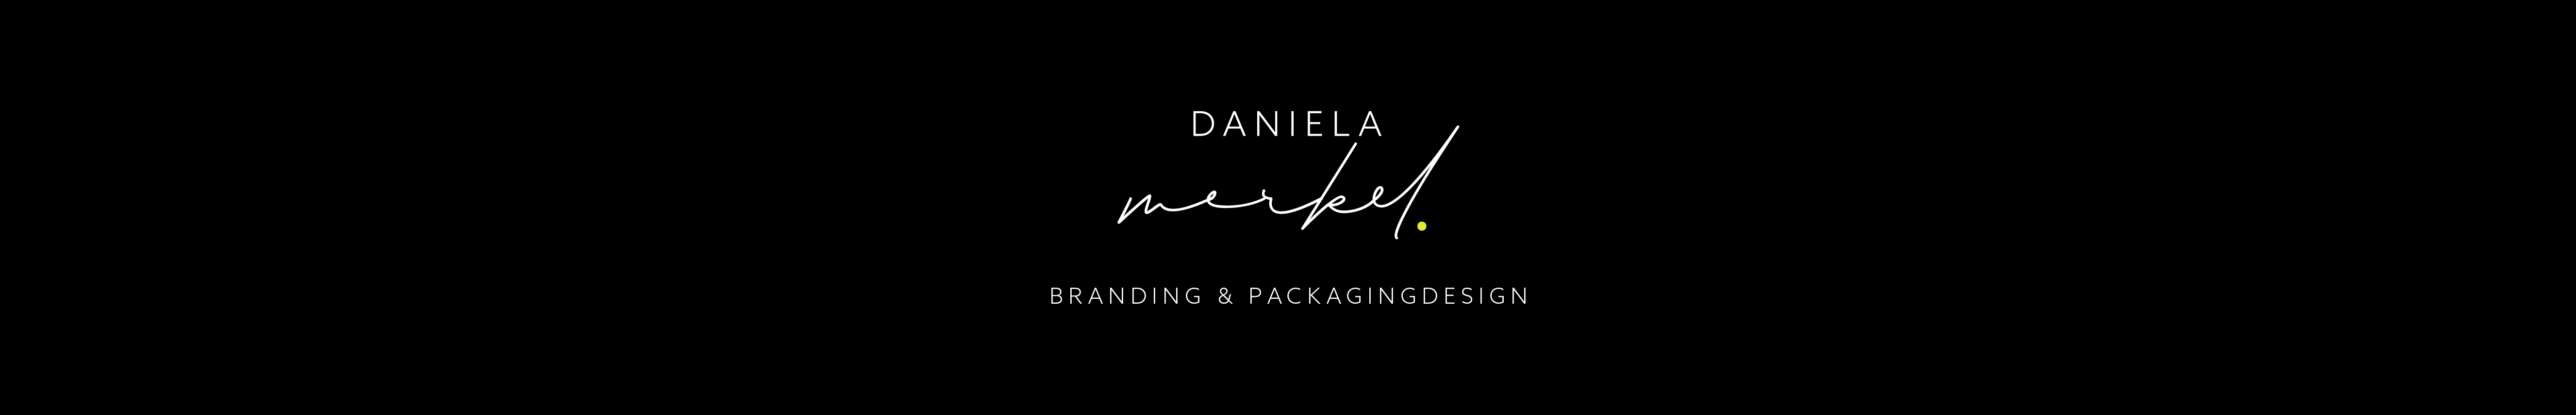 Daniela Merkel's profile banner